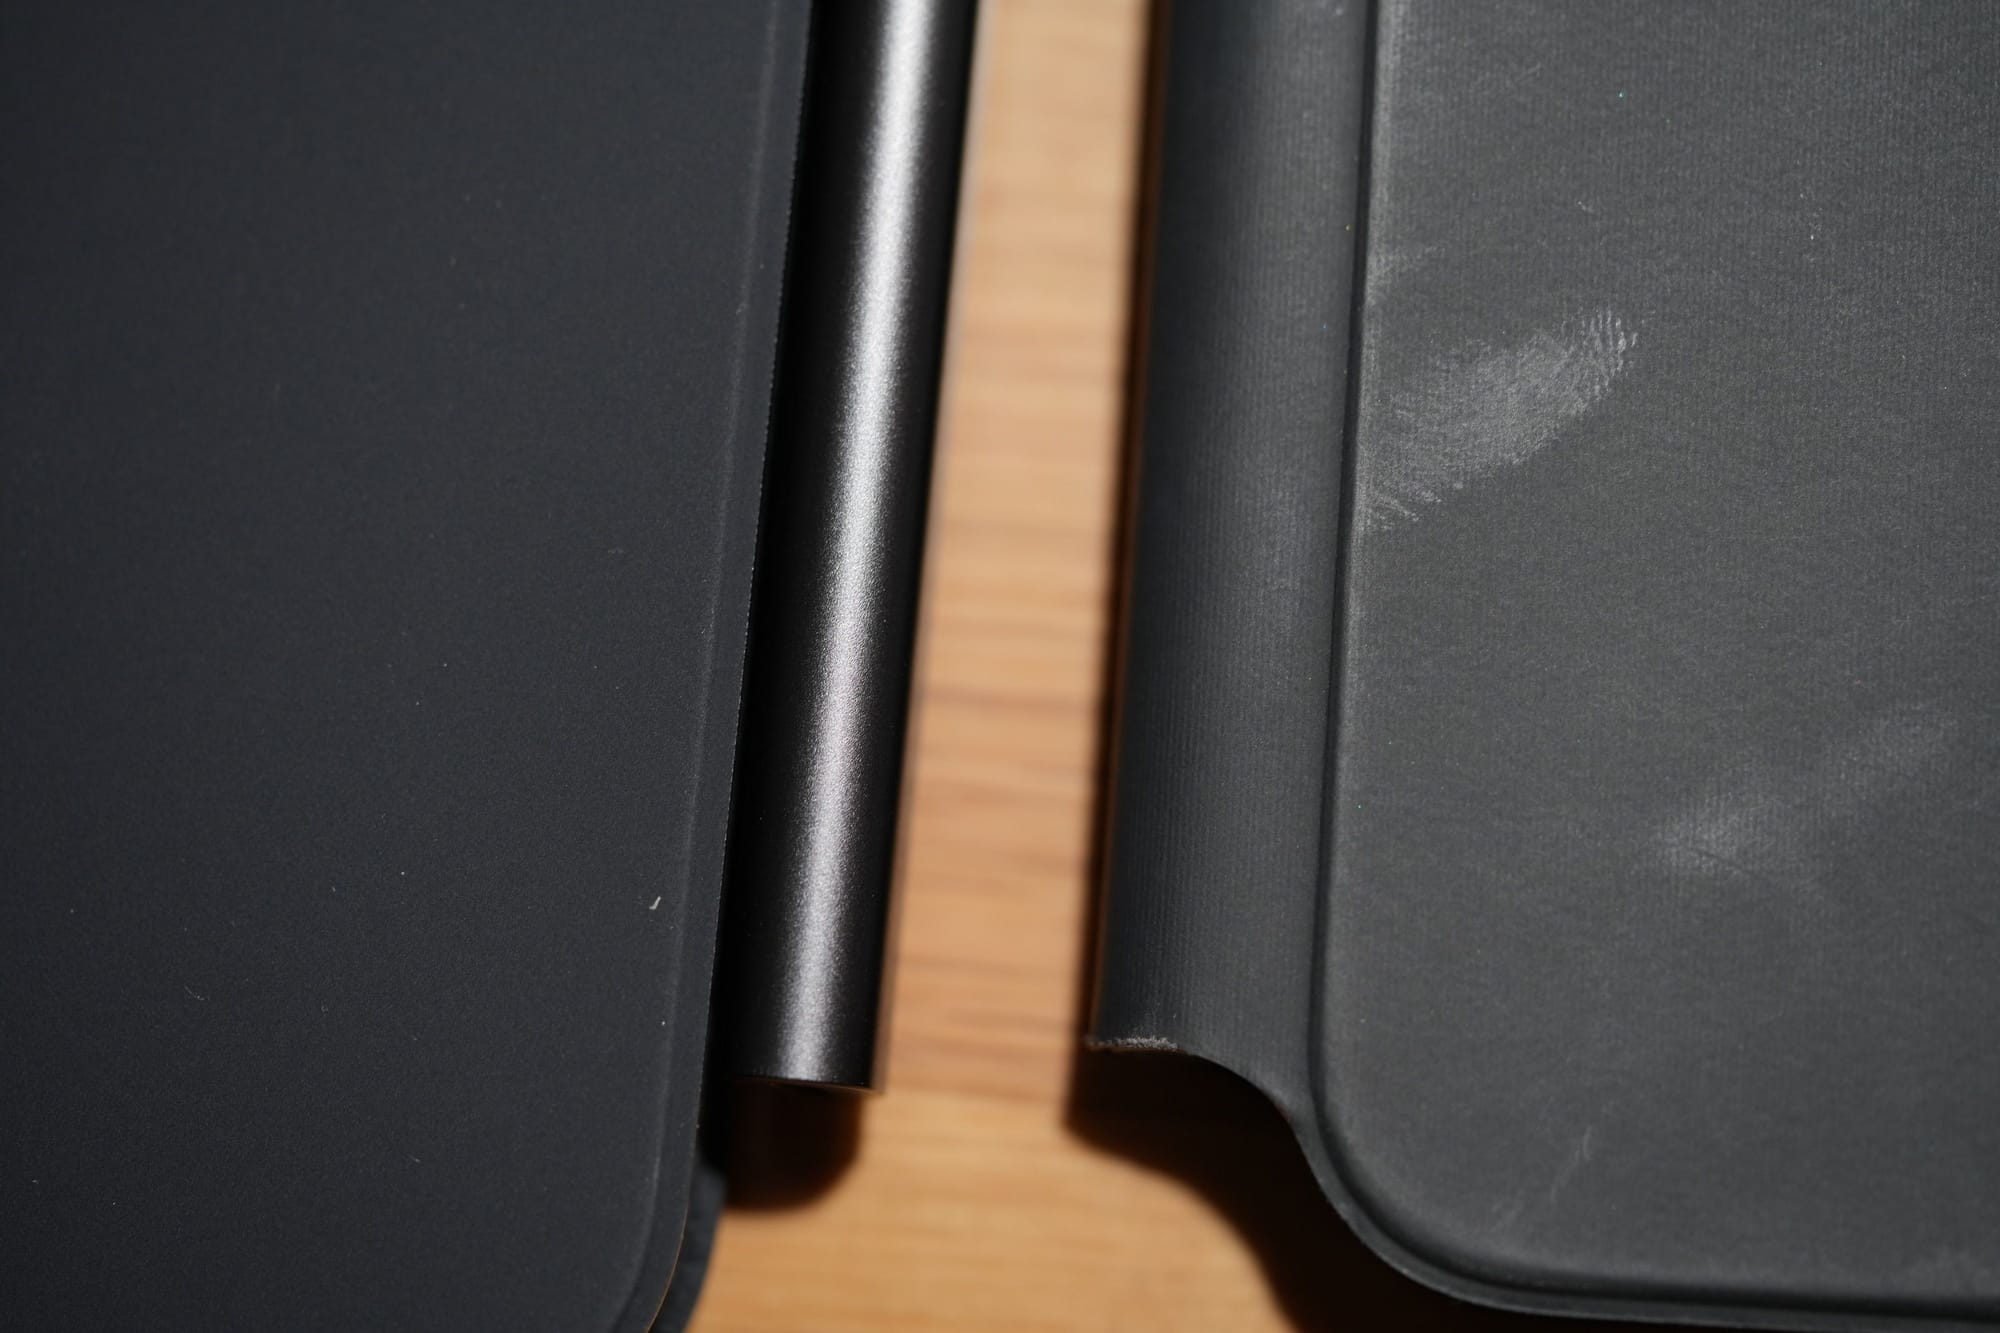 รีวิว iPad Pro M4 13-inch หลังใช้งาน 1 อาทิตย์มันเป็นยังไงสิ๊